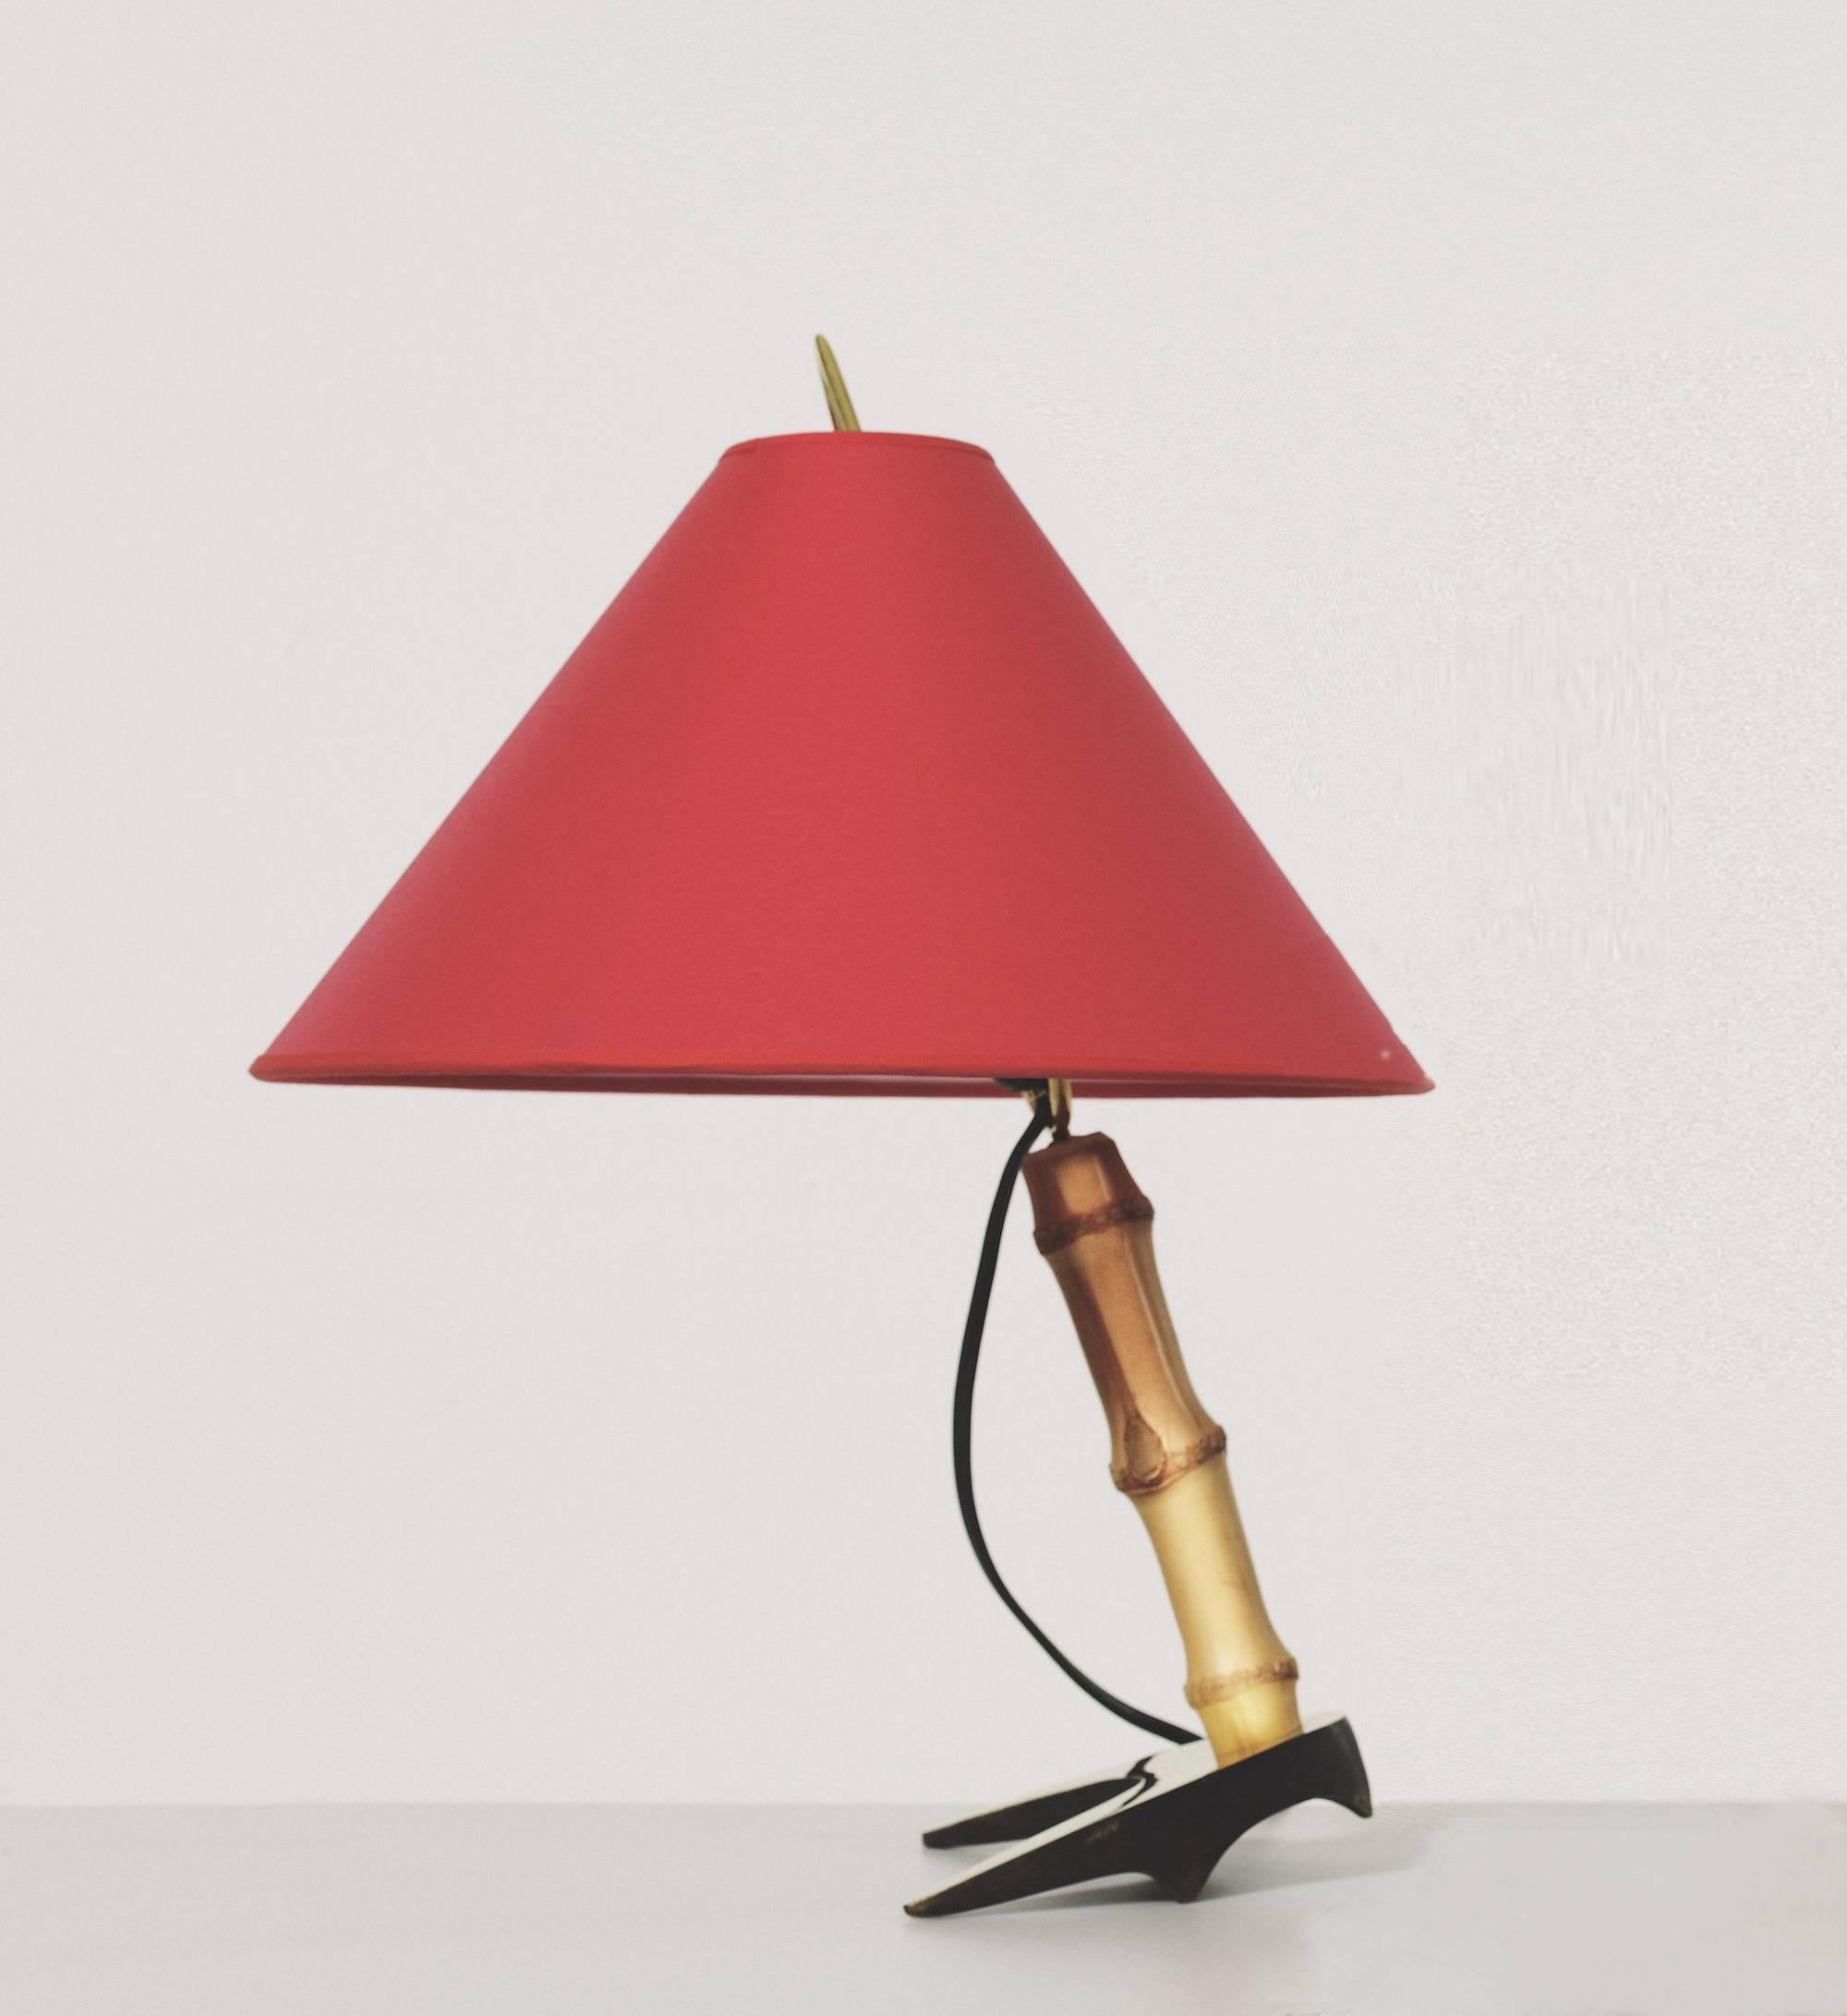 Lampe de table 'Fer à cheval' de Carl Auböck. Conçues dans les années 1950, ces lampes de table viennoises polyvalentes et minimalistes sont exécutées en bambou et en laiton avec une lourde base en laiton massif en forme de fer à cheval. Comprend un